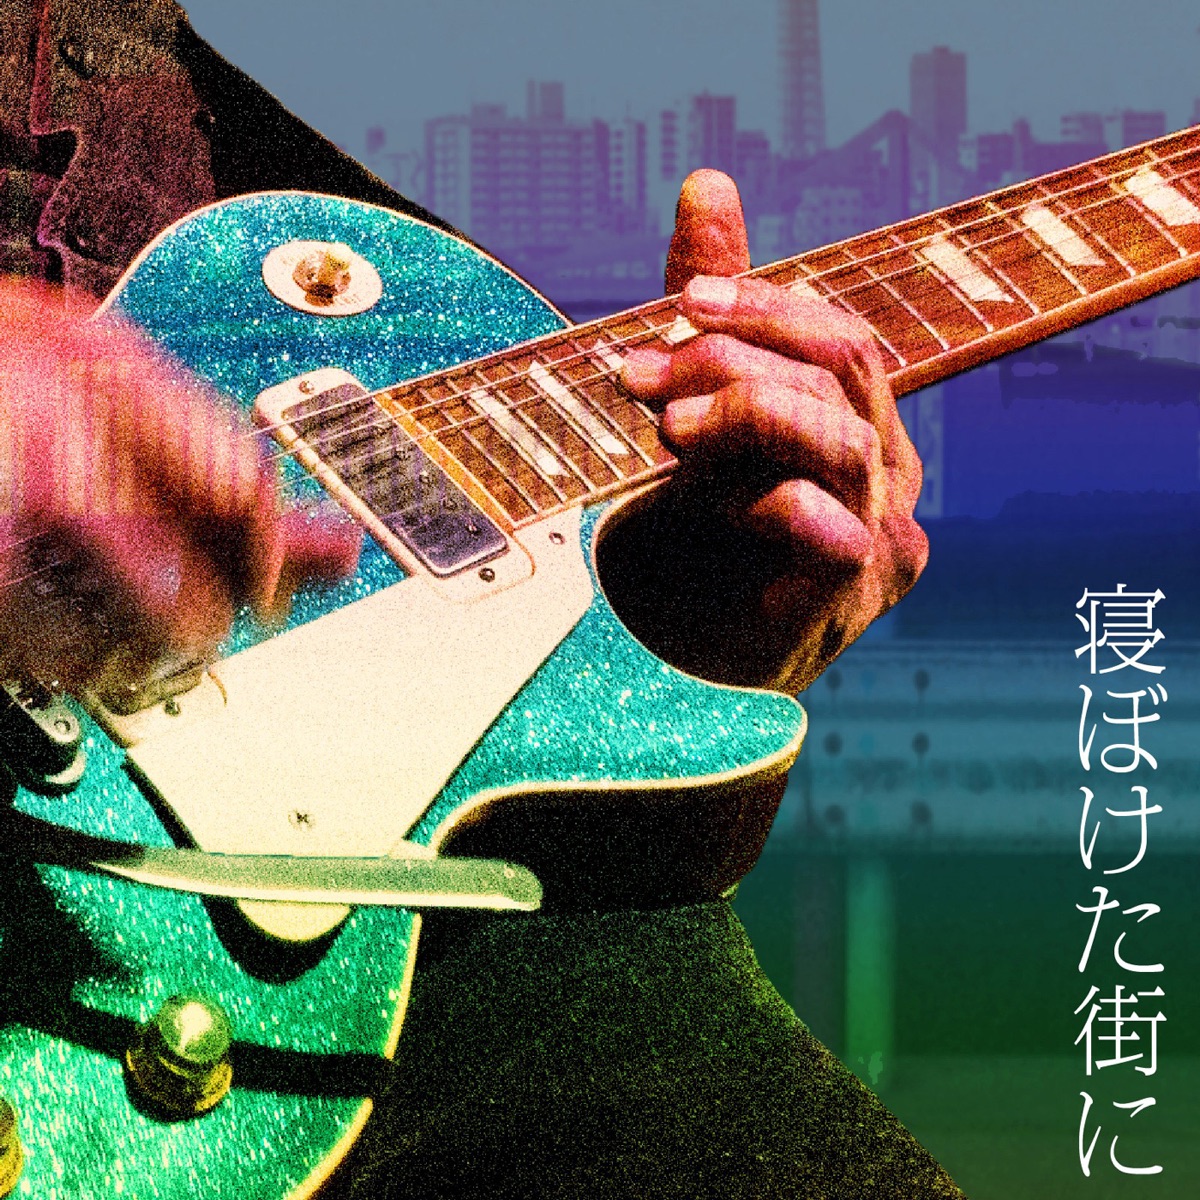 Cover art for『Kazuyoshi Saito - 寝ぼけた街に』from the release『Sleepy City - Neboketamachini